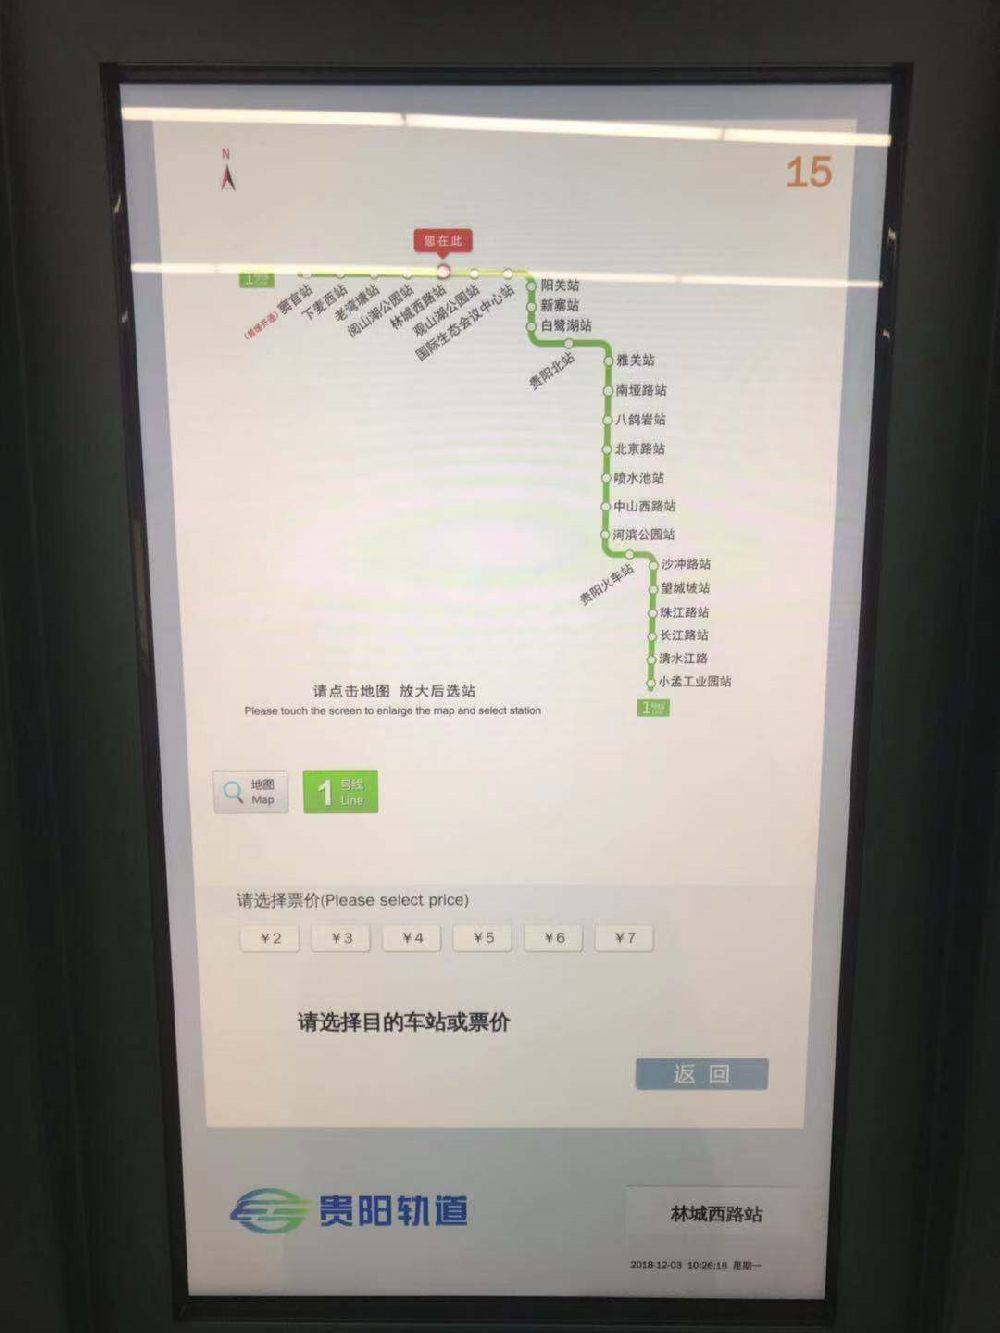 贵阳地铁1号线手机购票方法一览